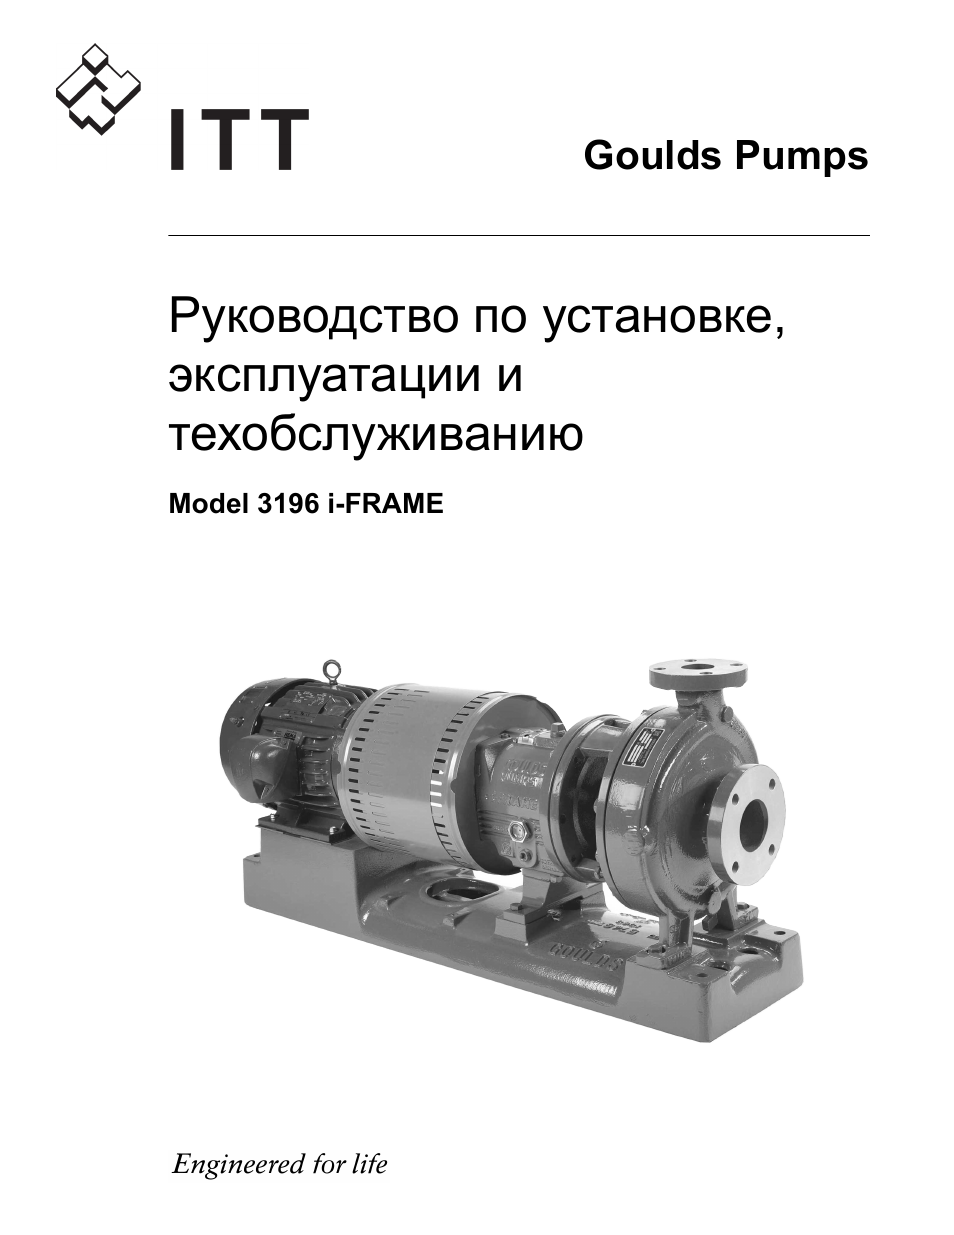 Инструкция по эксплуатации Goulds Pumps 3196 i-FRAME - IOM | 212 страниц